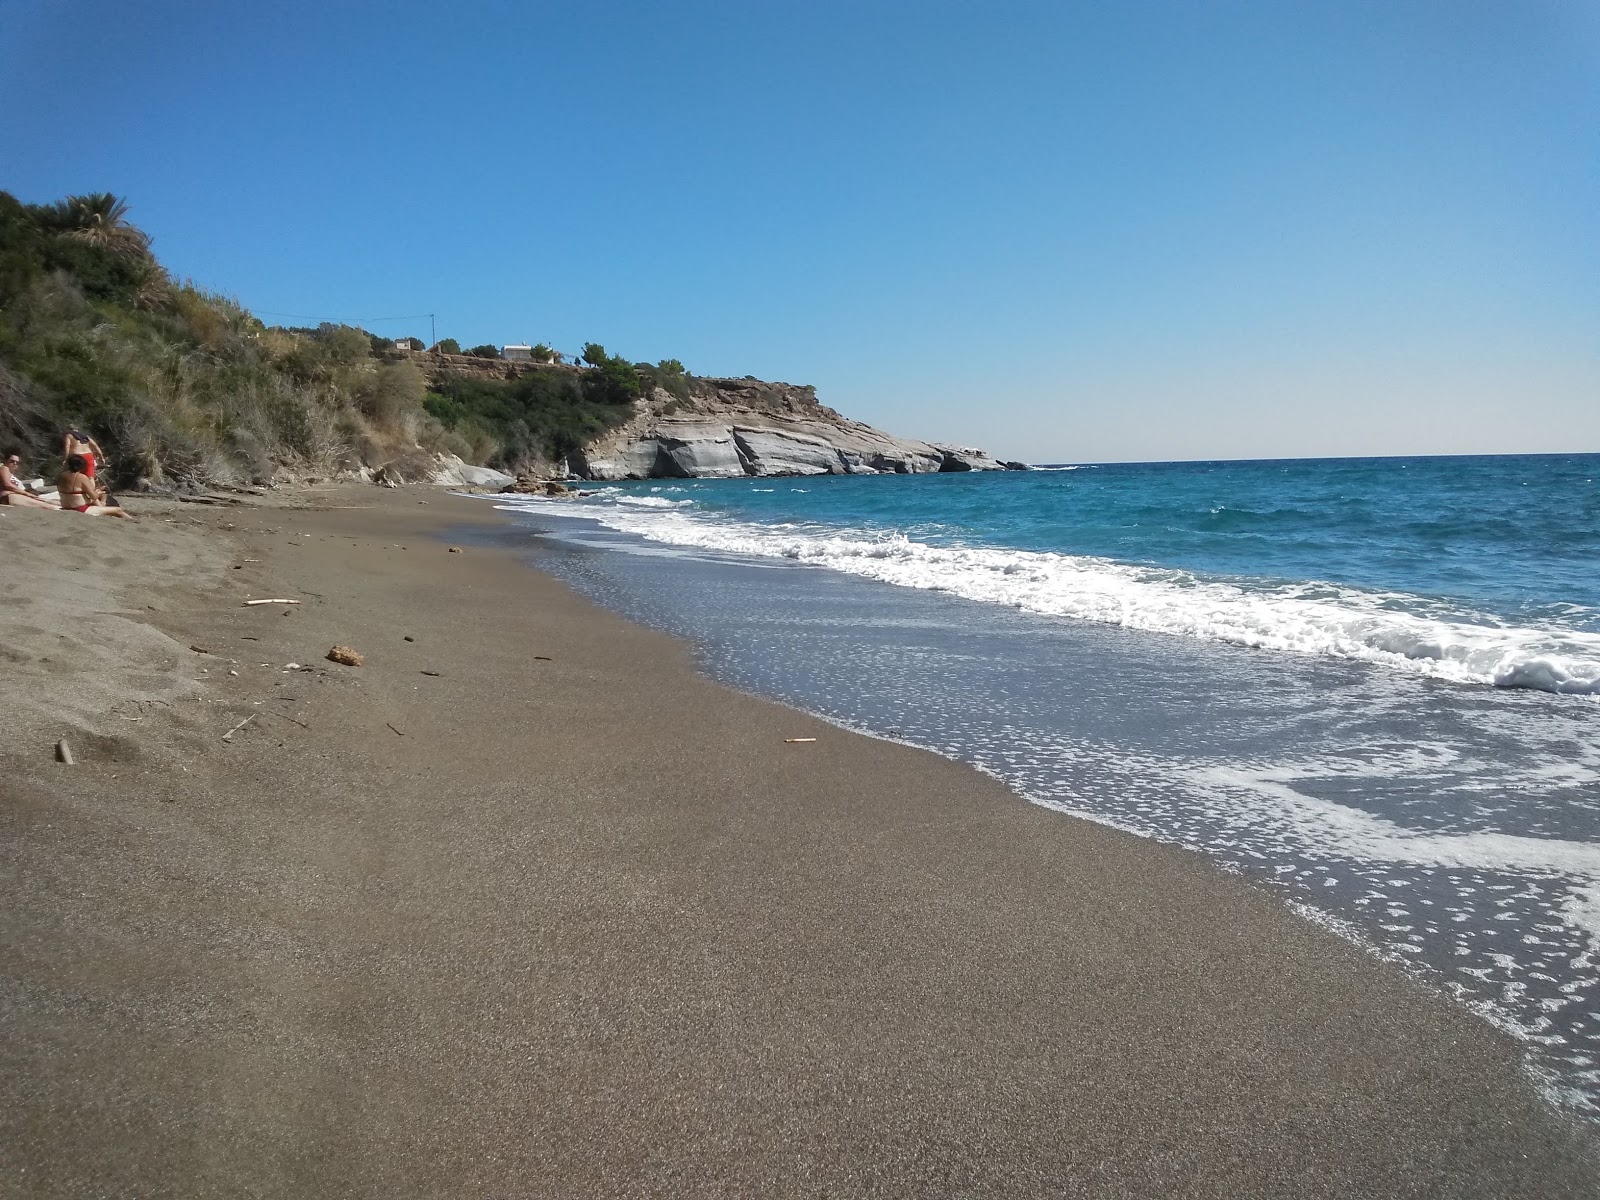 Fotografie cu Livadi beach cu o suprafață de apa pură turcoaz